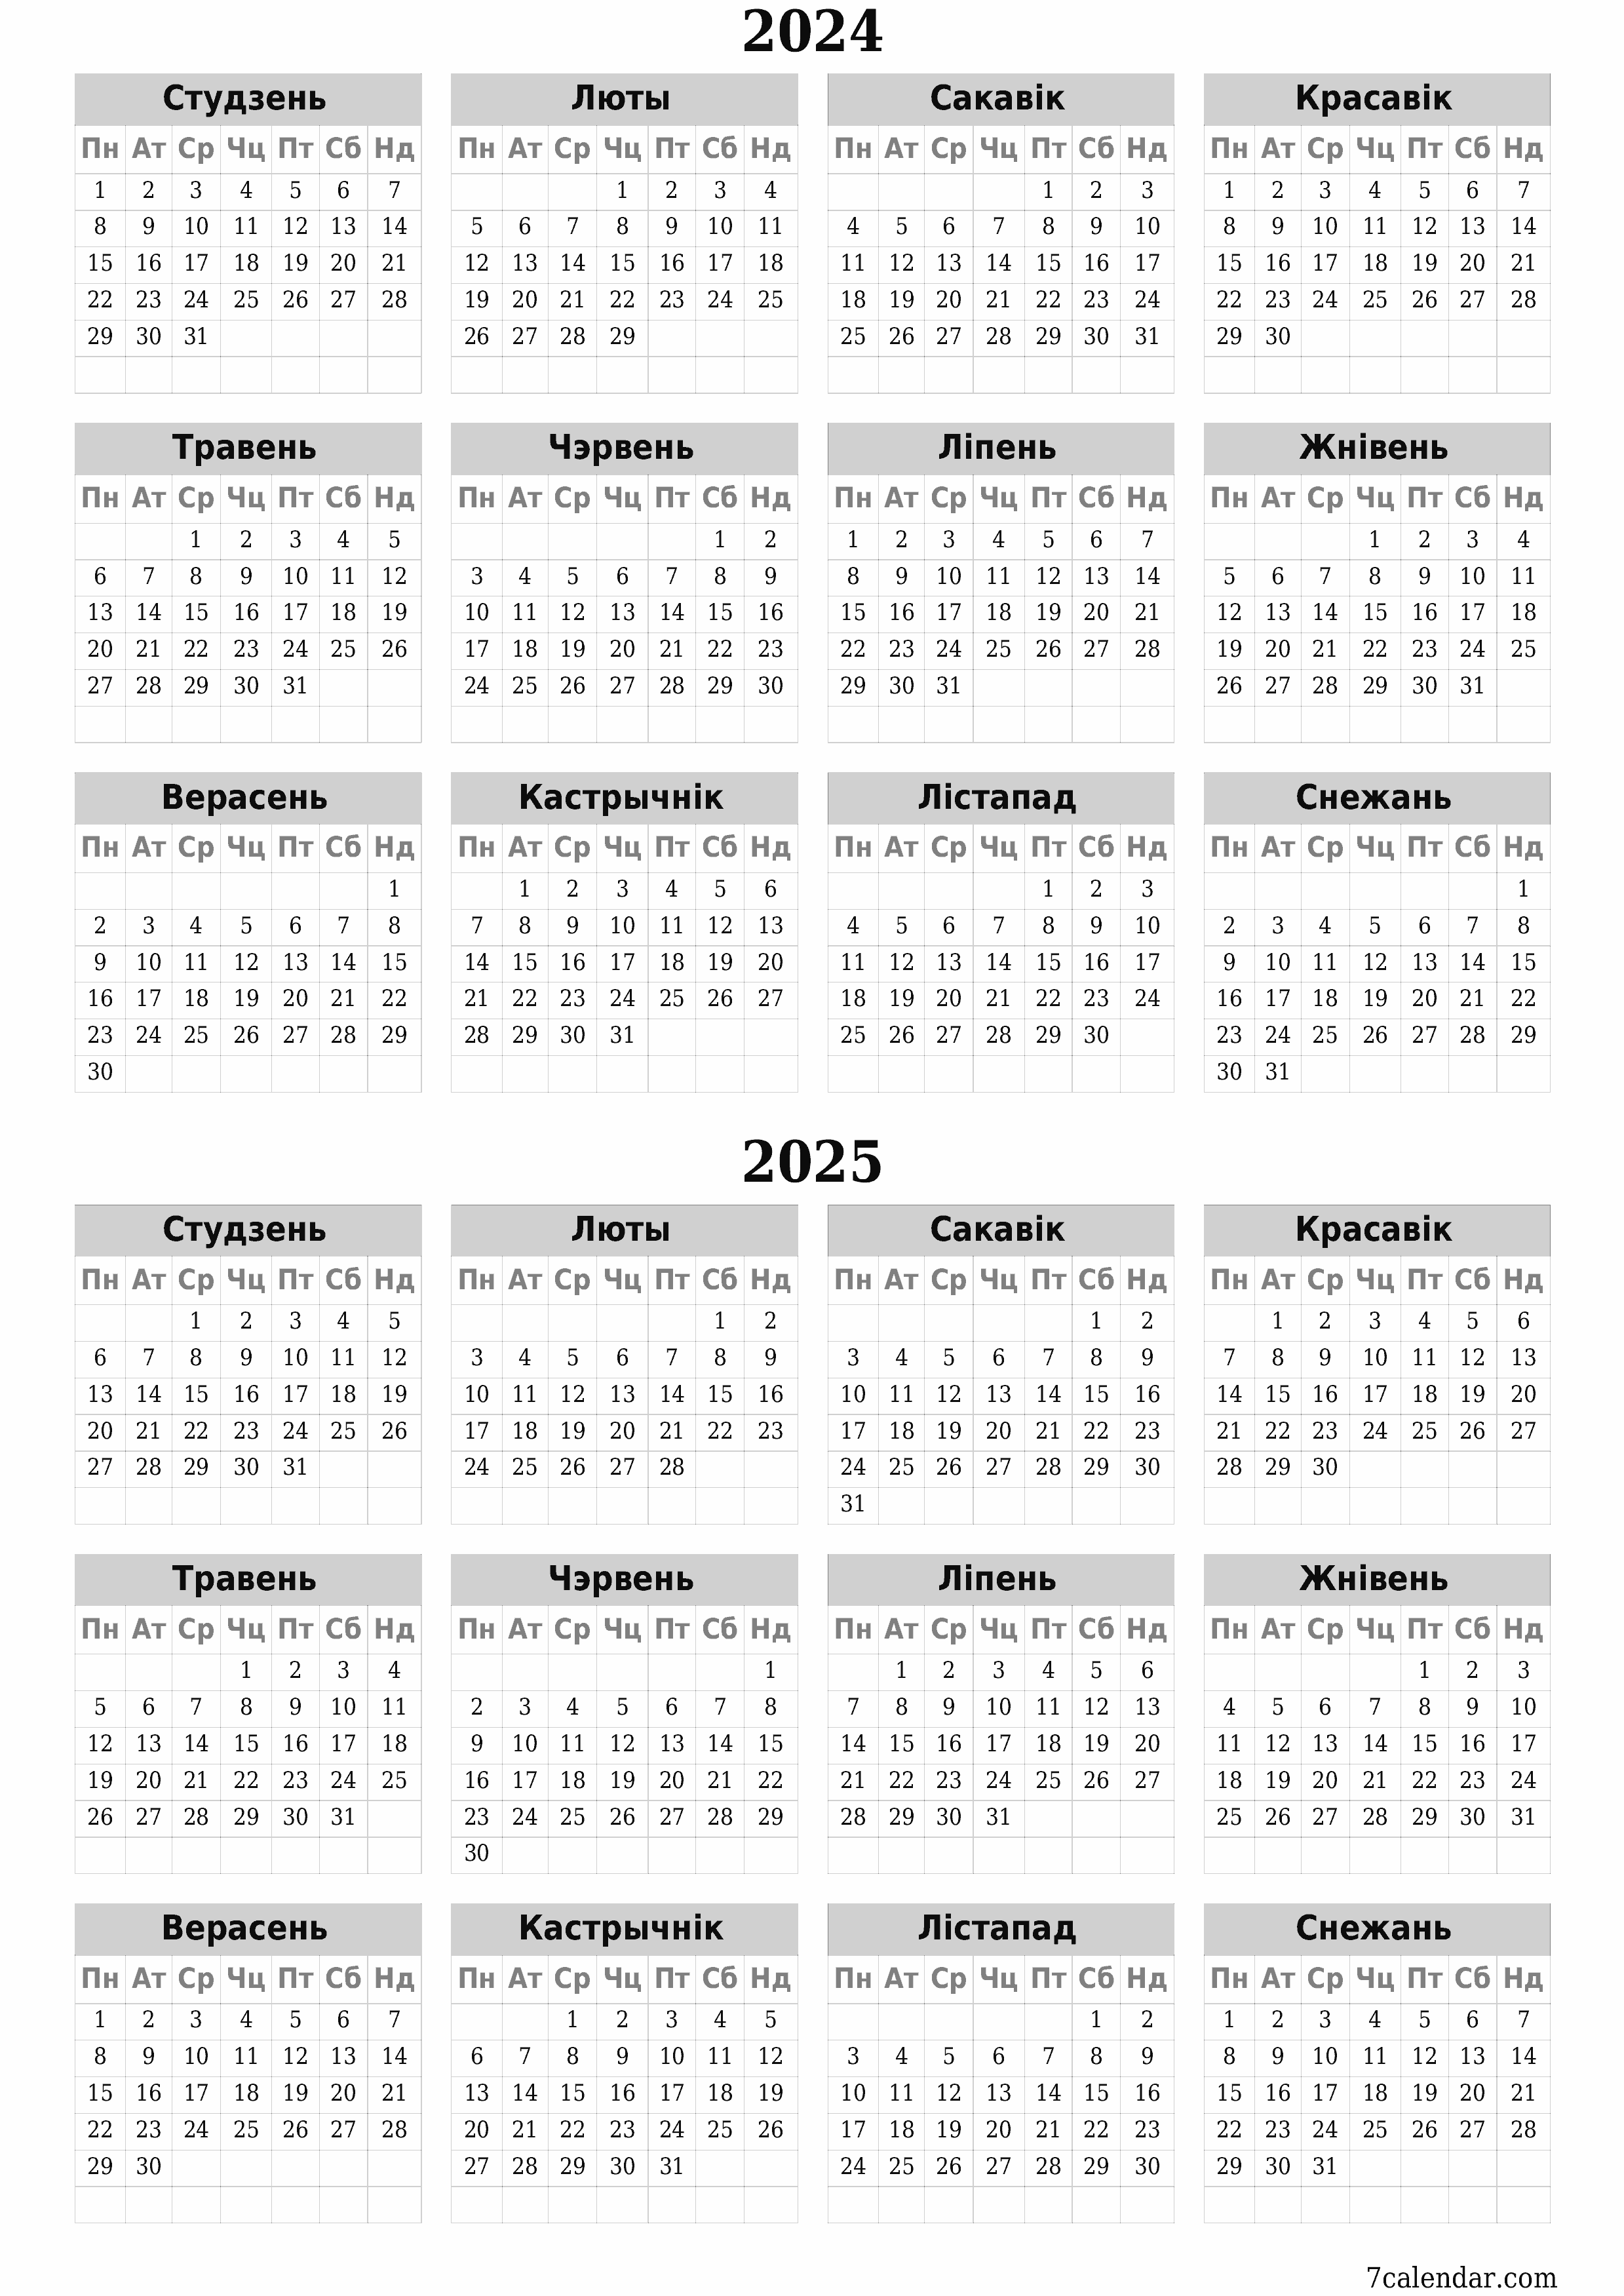  для друку насценны шаблон календара бясплатны вертыкальны Штогадовы каляндар Снежань (Снеж) 2024